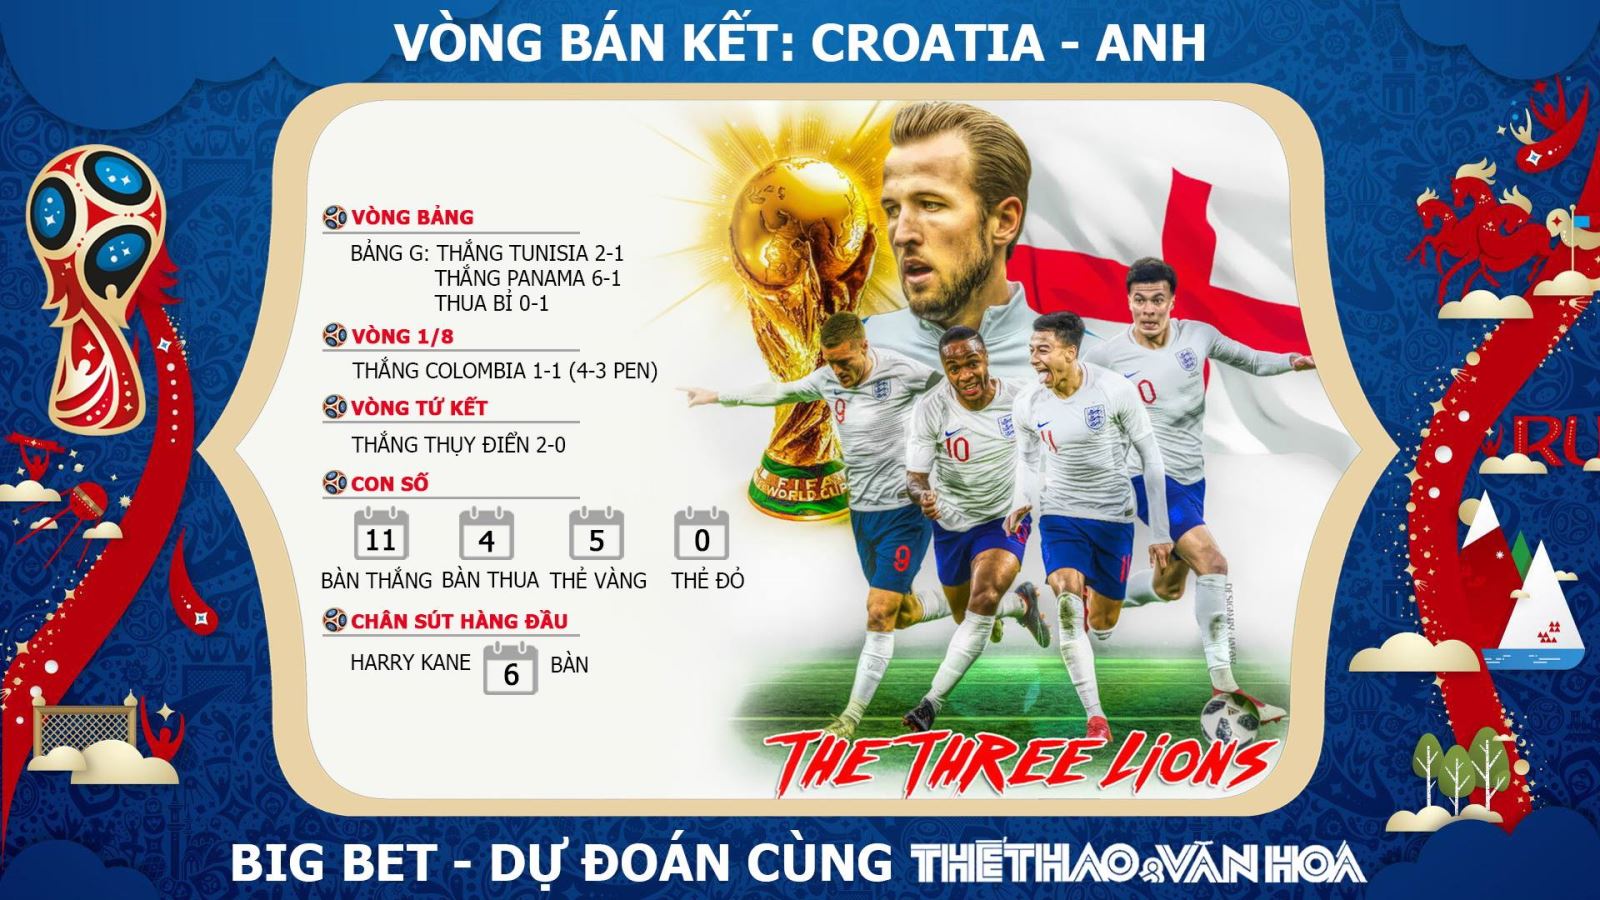 Nhận định bóng đá bán kết World Cup 2018: Croatia - Anh (1h00 ngày 12/7, trực tiếp VTV3 & VTV3 HD) 